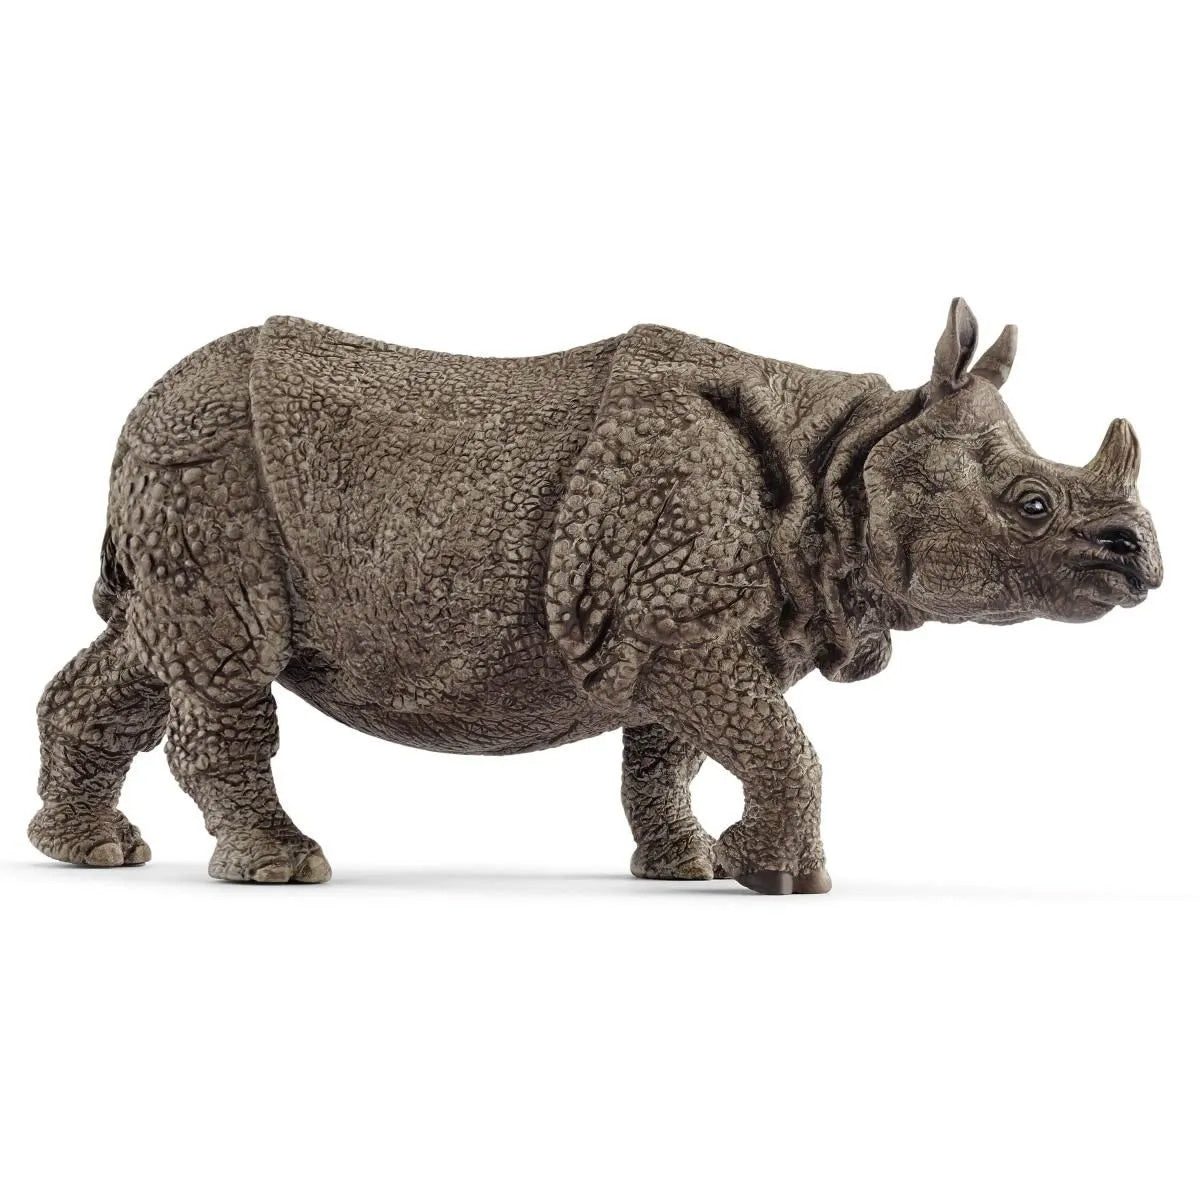 Schleich Wild Life Indian rhinoceros toy figurine